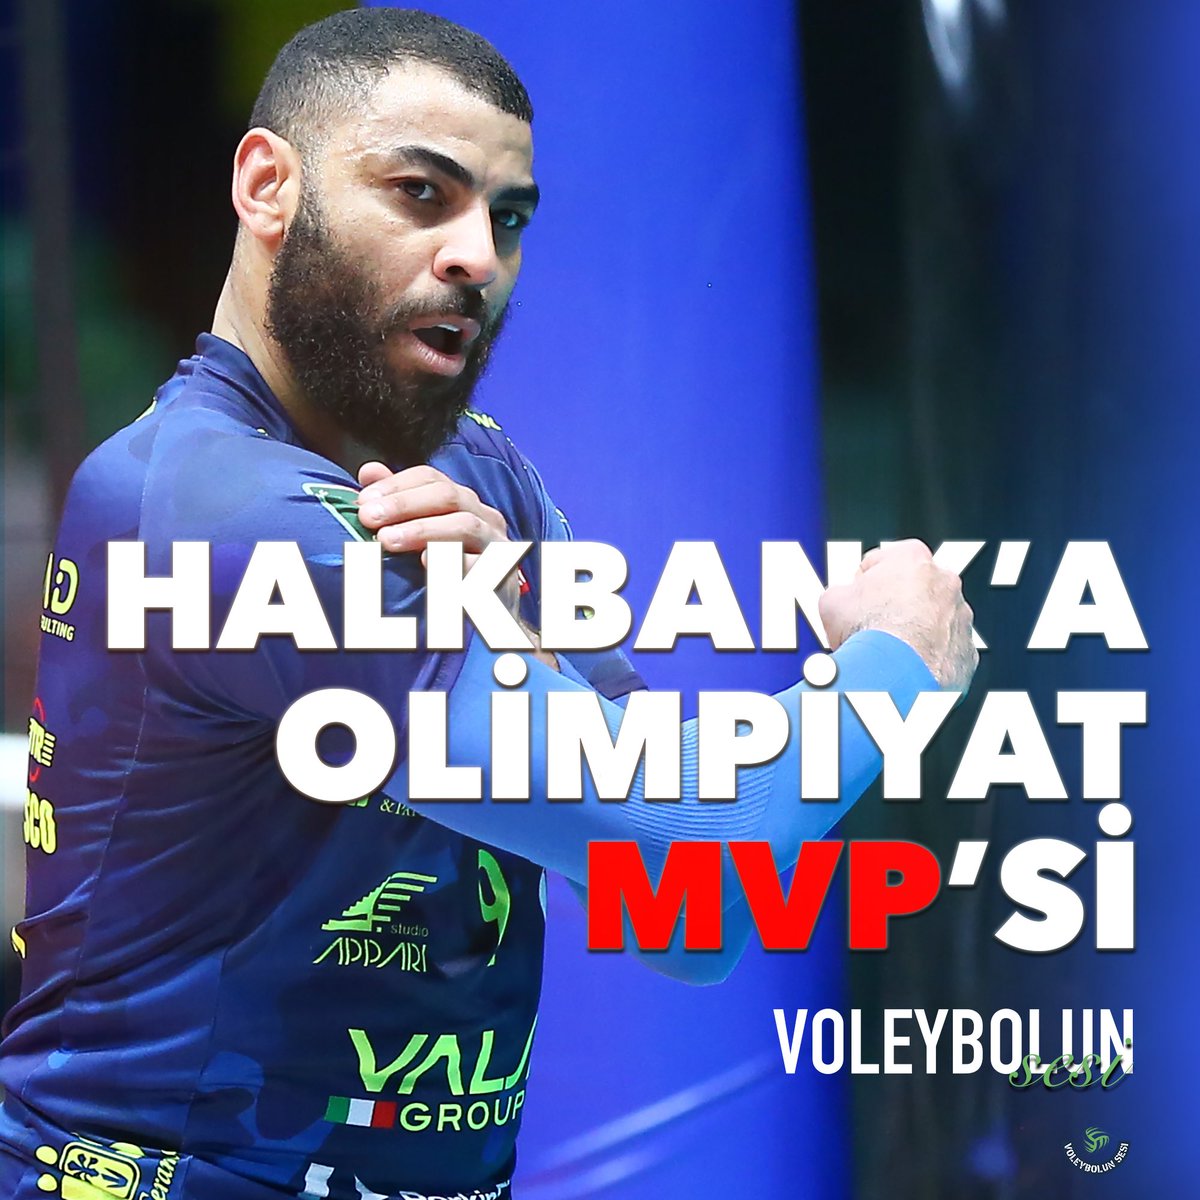 🌟 Halkbank’a Olimpiyat MVP’si
🔗voleybolunsesi.com/halkbanka-olim…